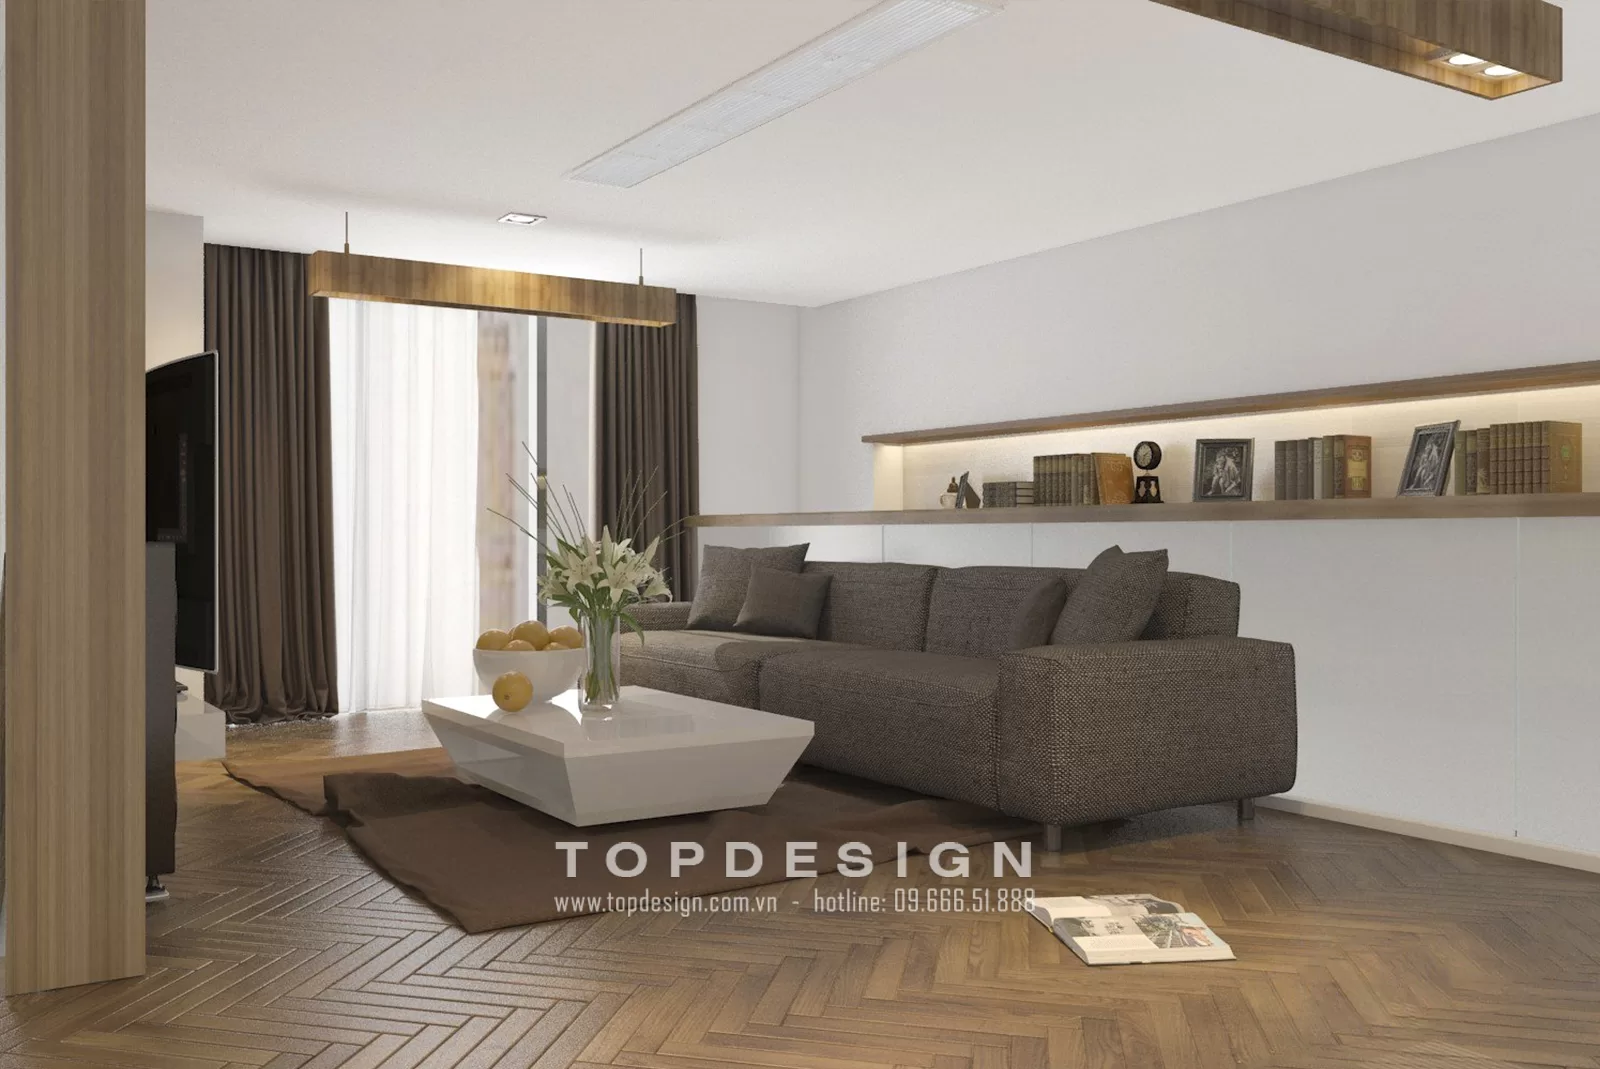 Thiết kế nội thất nhà phố hiện đại - Topdesign 05